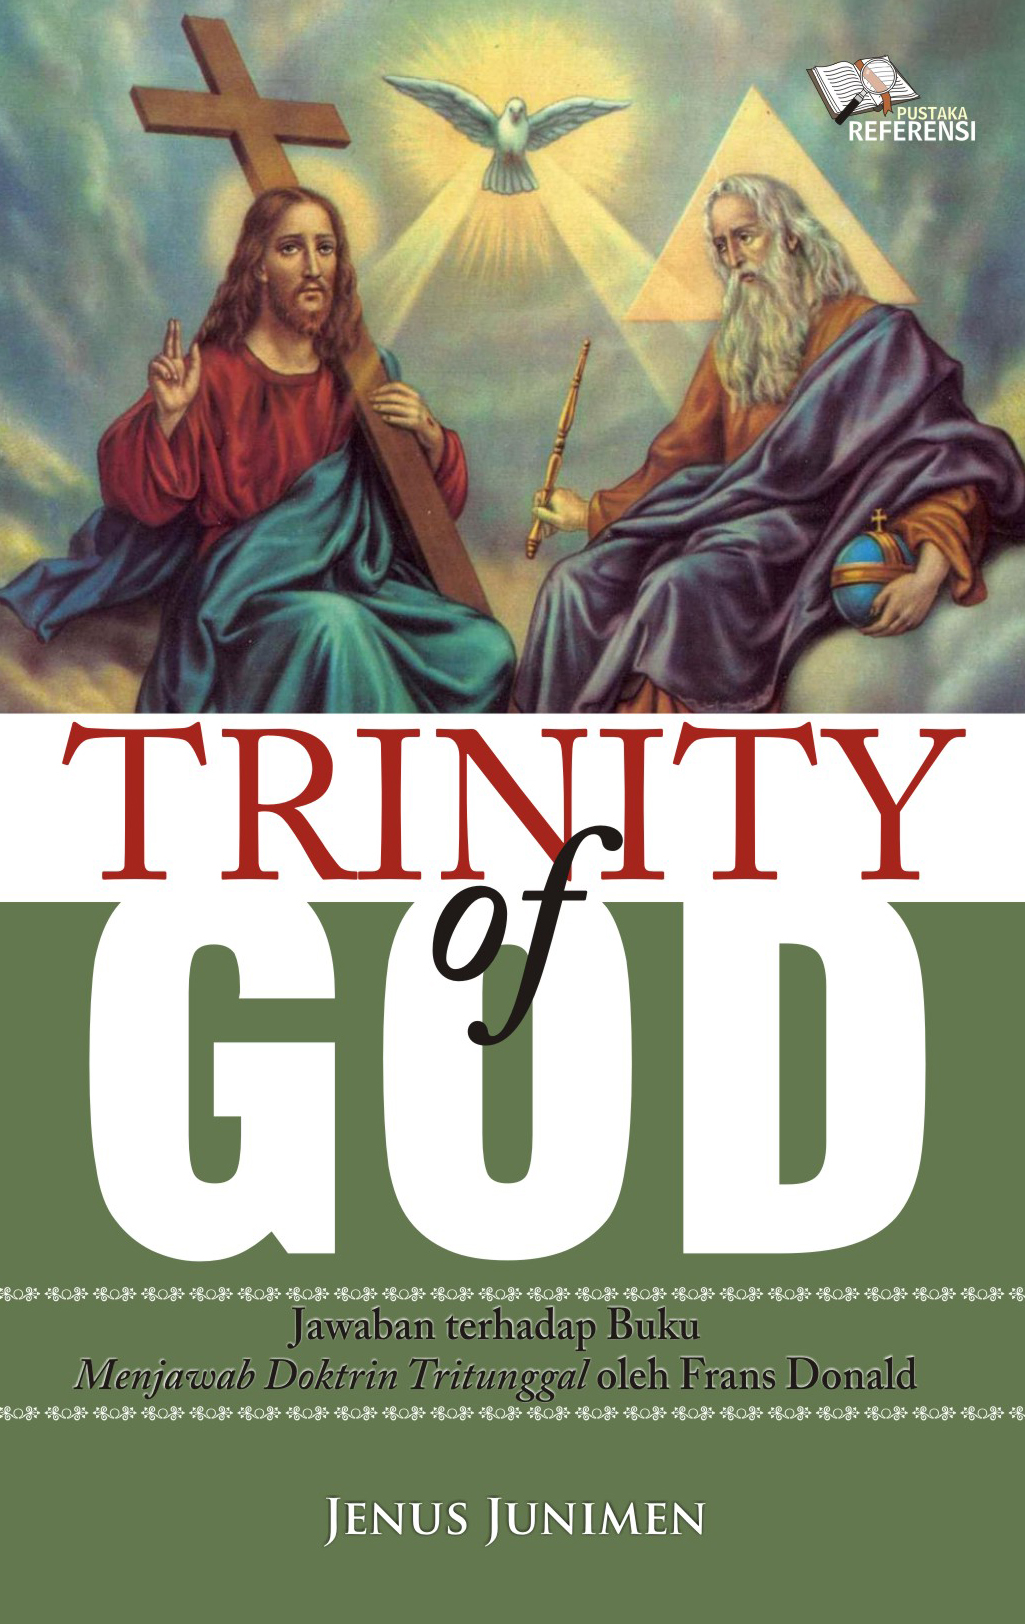 Trinity of God, jawaban terhadap buku menjawab doktrin tritunggal oleh Frans Donald [sumber elektronis]